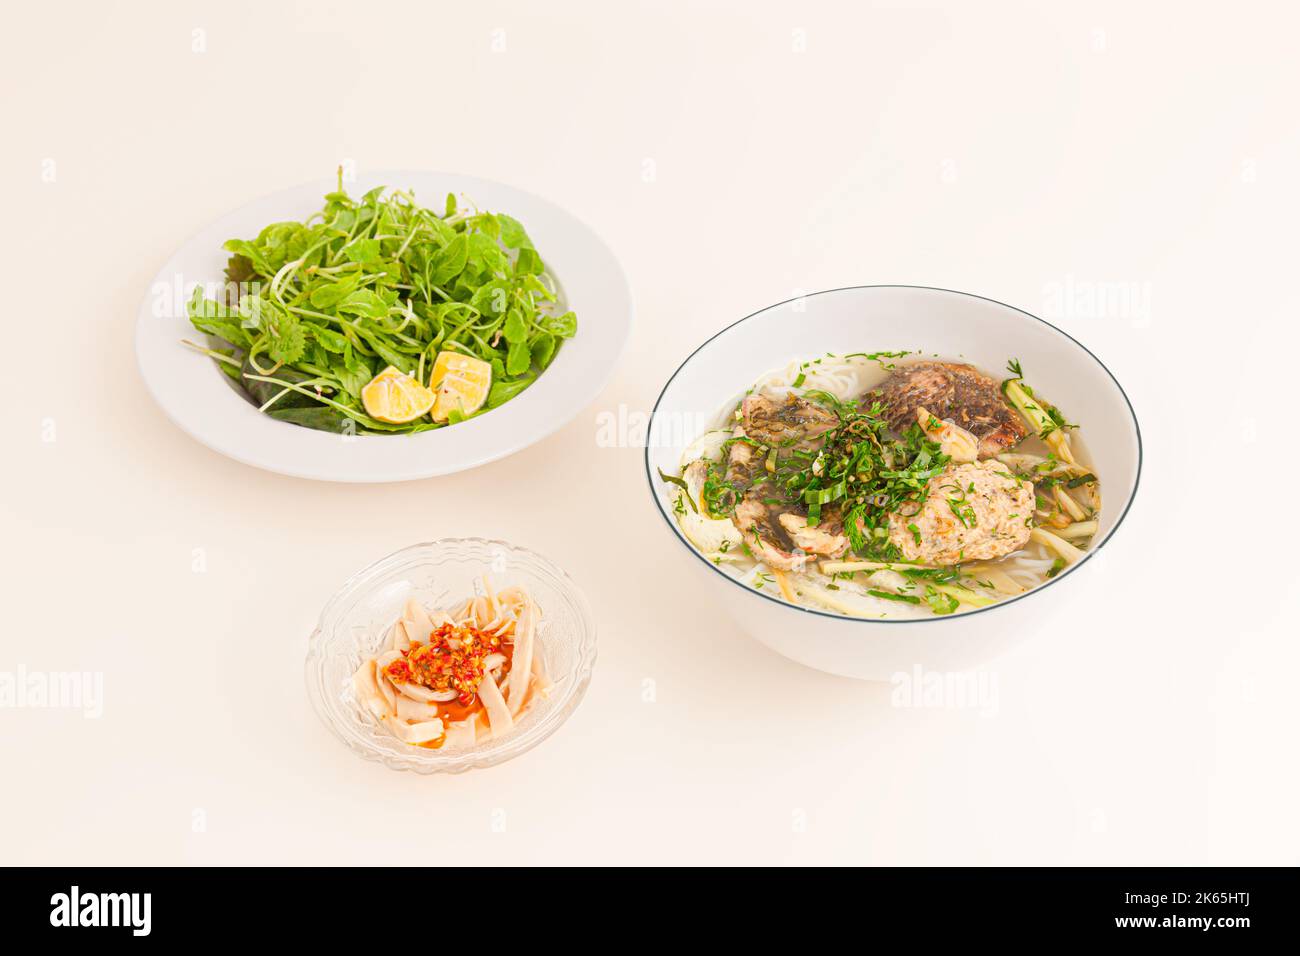 Bun Ca ro dong, vietnamesische Reisnudeln und anabas-Fischsuppe, vietnamesisches Essen isoliert auf weißem Hintergrund, perspektivische Ansicht Stockfoto